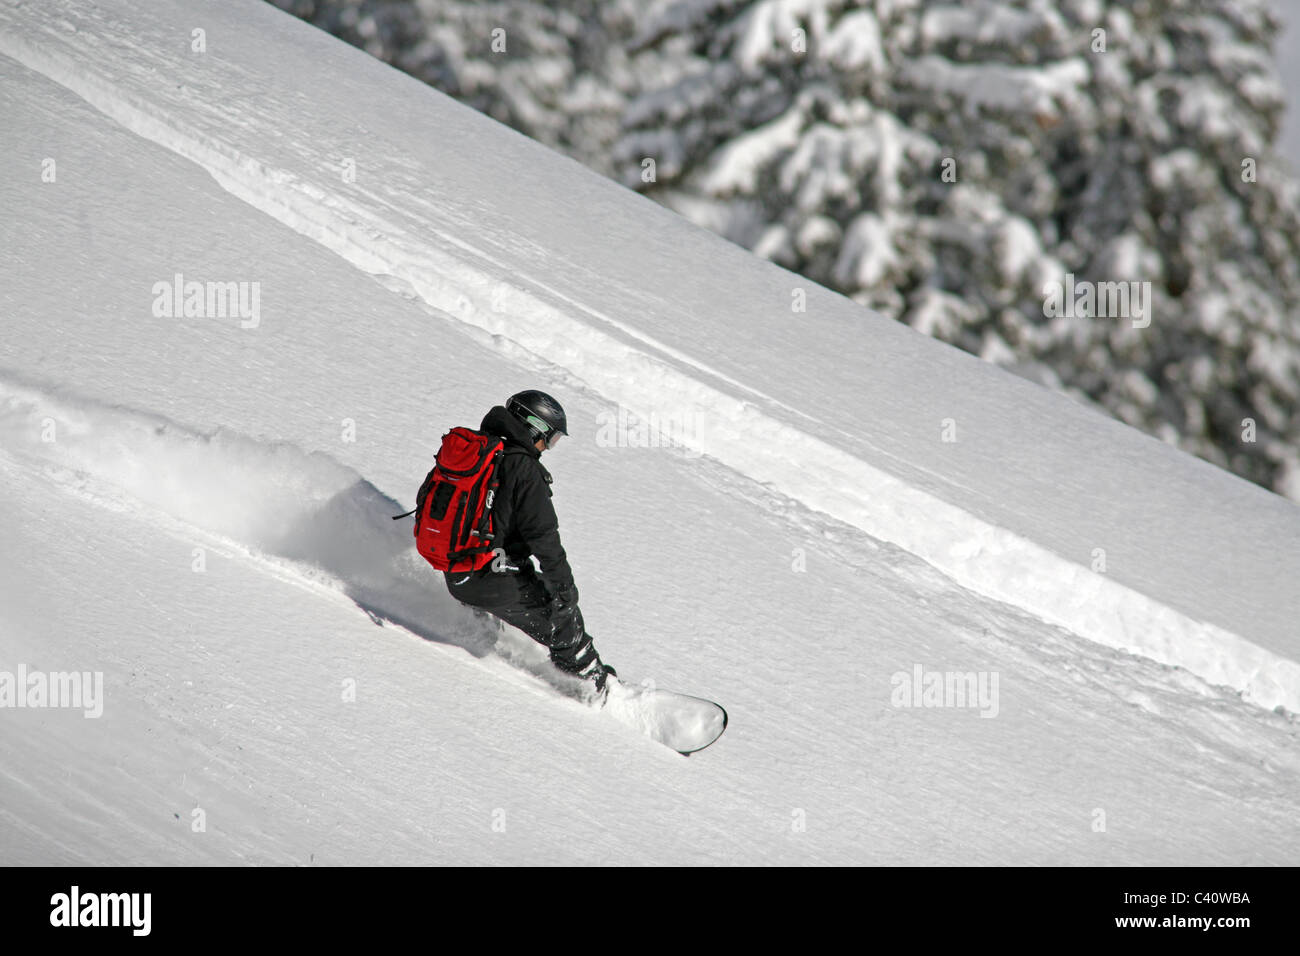 Snowboarder jouit de poudreuse fraîche, en hors piste de ski de Brighton. Salt Lake City, Utah, United States, Amérique du Nord Banque D'Images